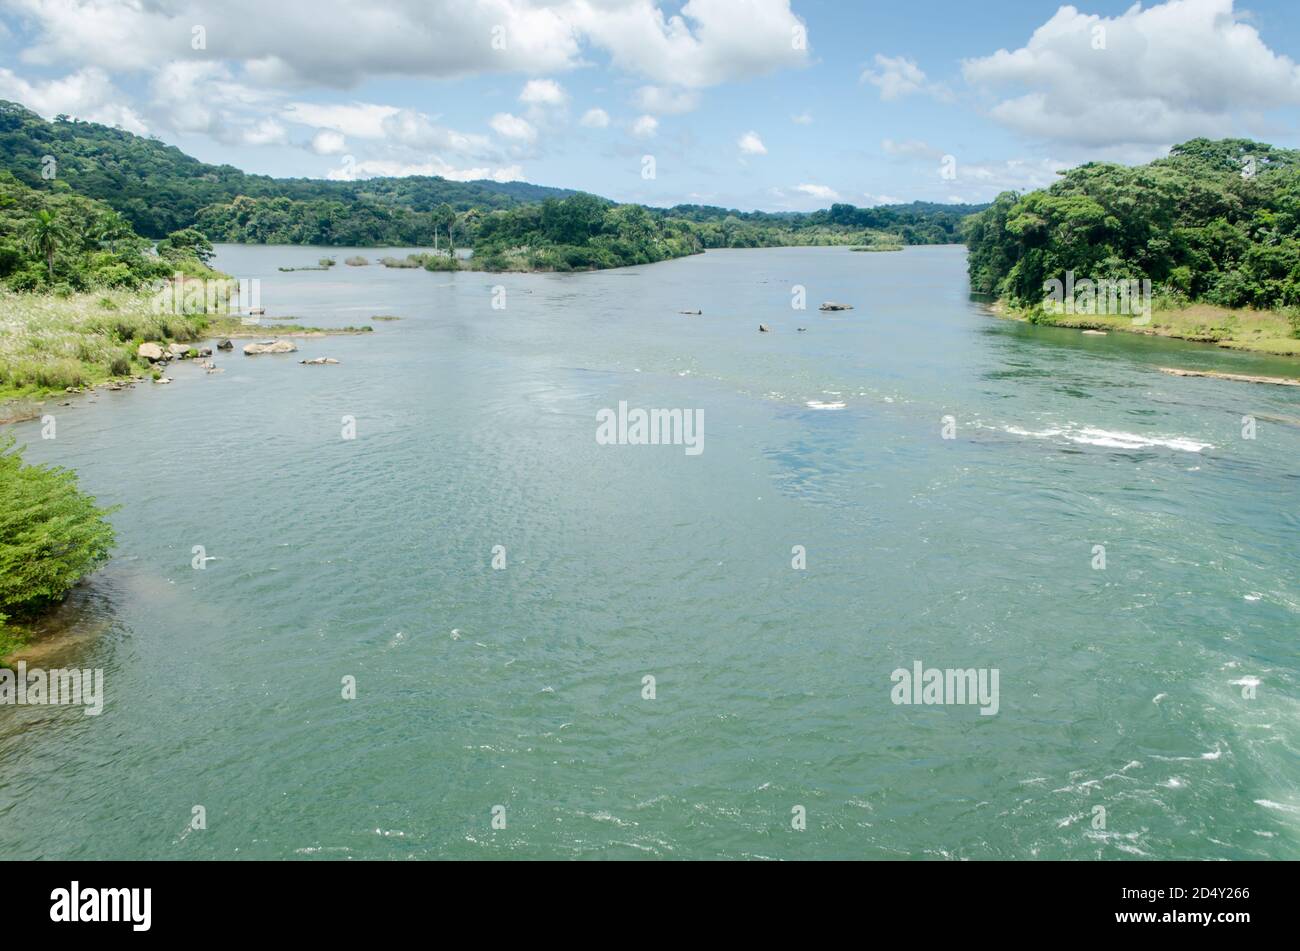 Der Chagres River in Panama ist von entscheidender Bedeutung, bekannt für seine historische, ökologische Bedeutung und seine Rolle bei der Wasserbewirtschaftung für den Panamakanal. Stockfoto